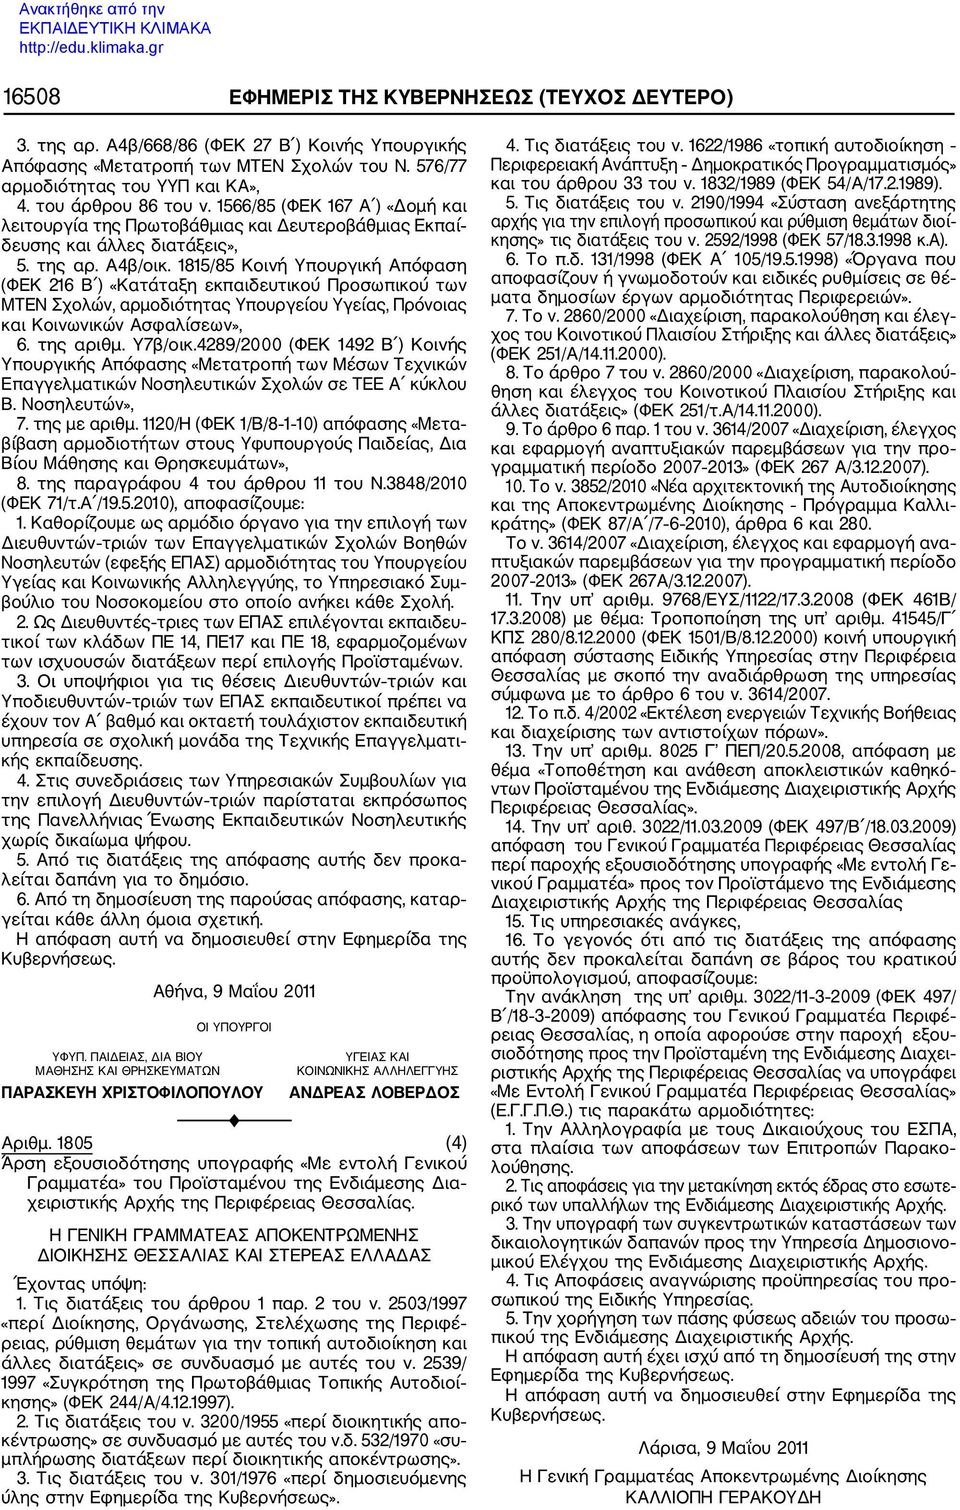 1815/85 Κοινή Υπουργική Απόφαση (ΦΕΚ 216 Β ) «Κατάταξη εκπαιδευτικού Προσωπικού των ΜΝ Σχολών, αρμοδιότητας Υπουργείου Υγείας, Πρόνοιας και Κοινωνικών Ασφαλίσεων», 6. της αριθμ. Υ7β/οικ.